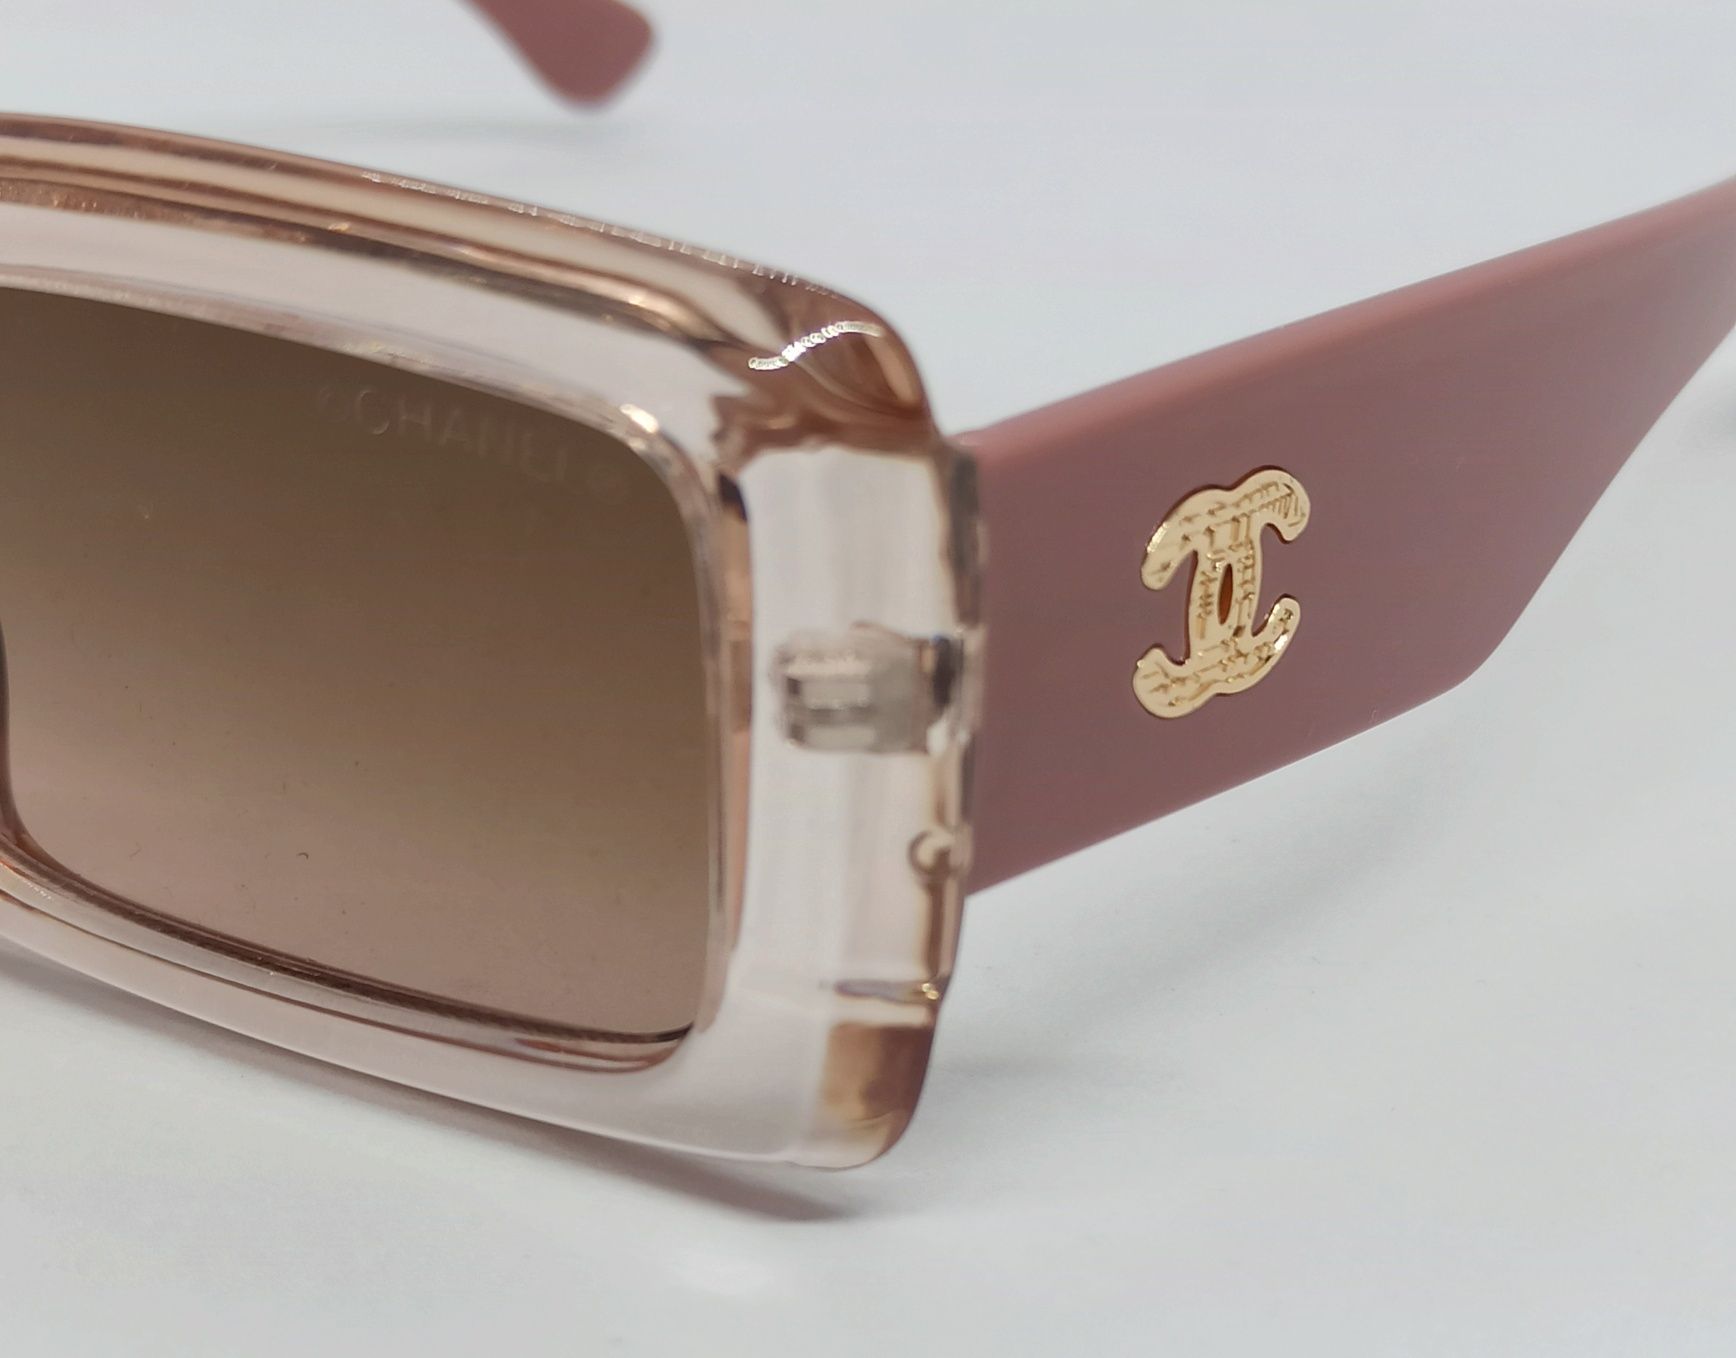 Брендовые очки женские розово пудровые линзы коричневый градиент 2090